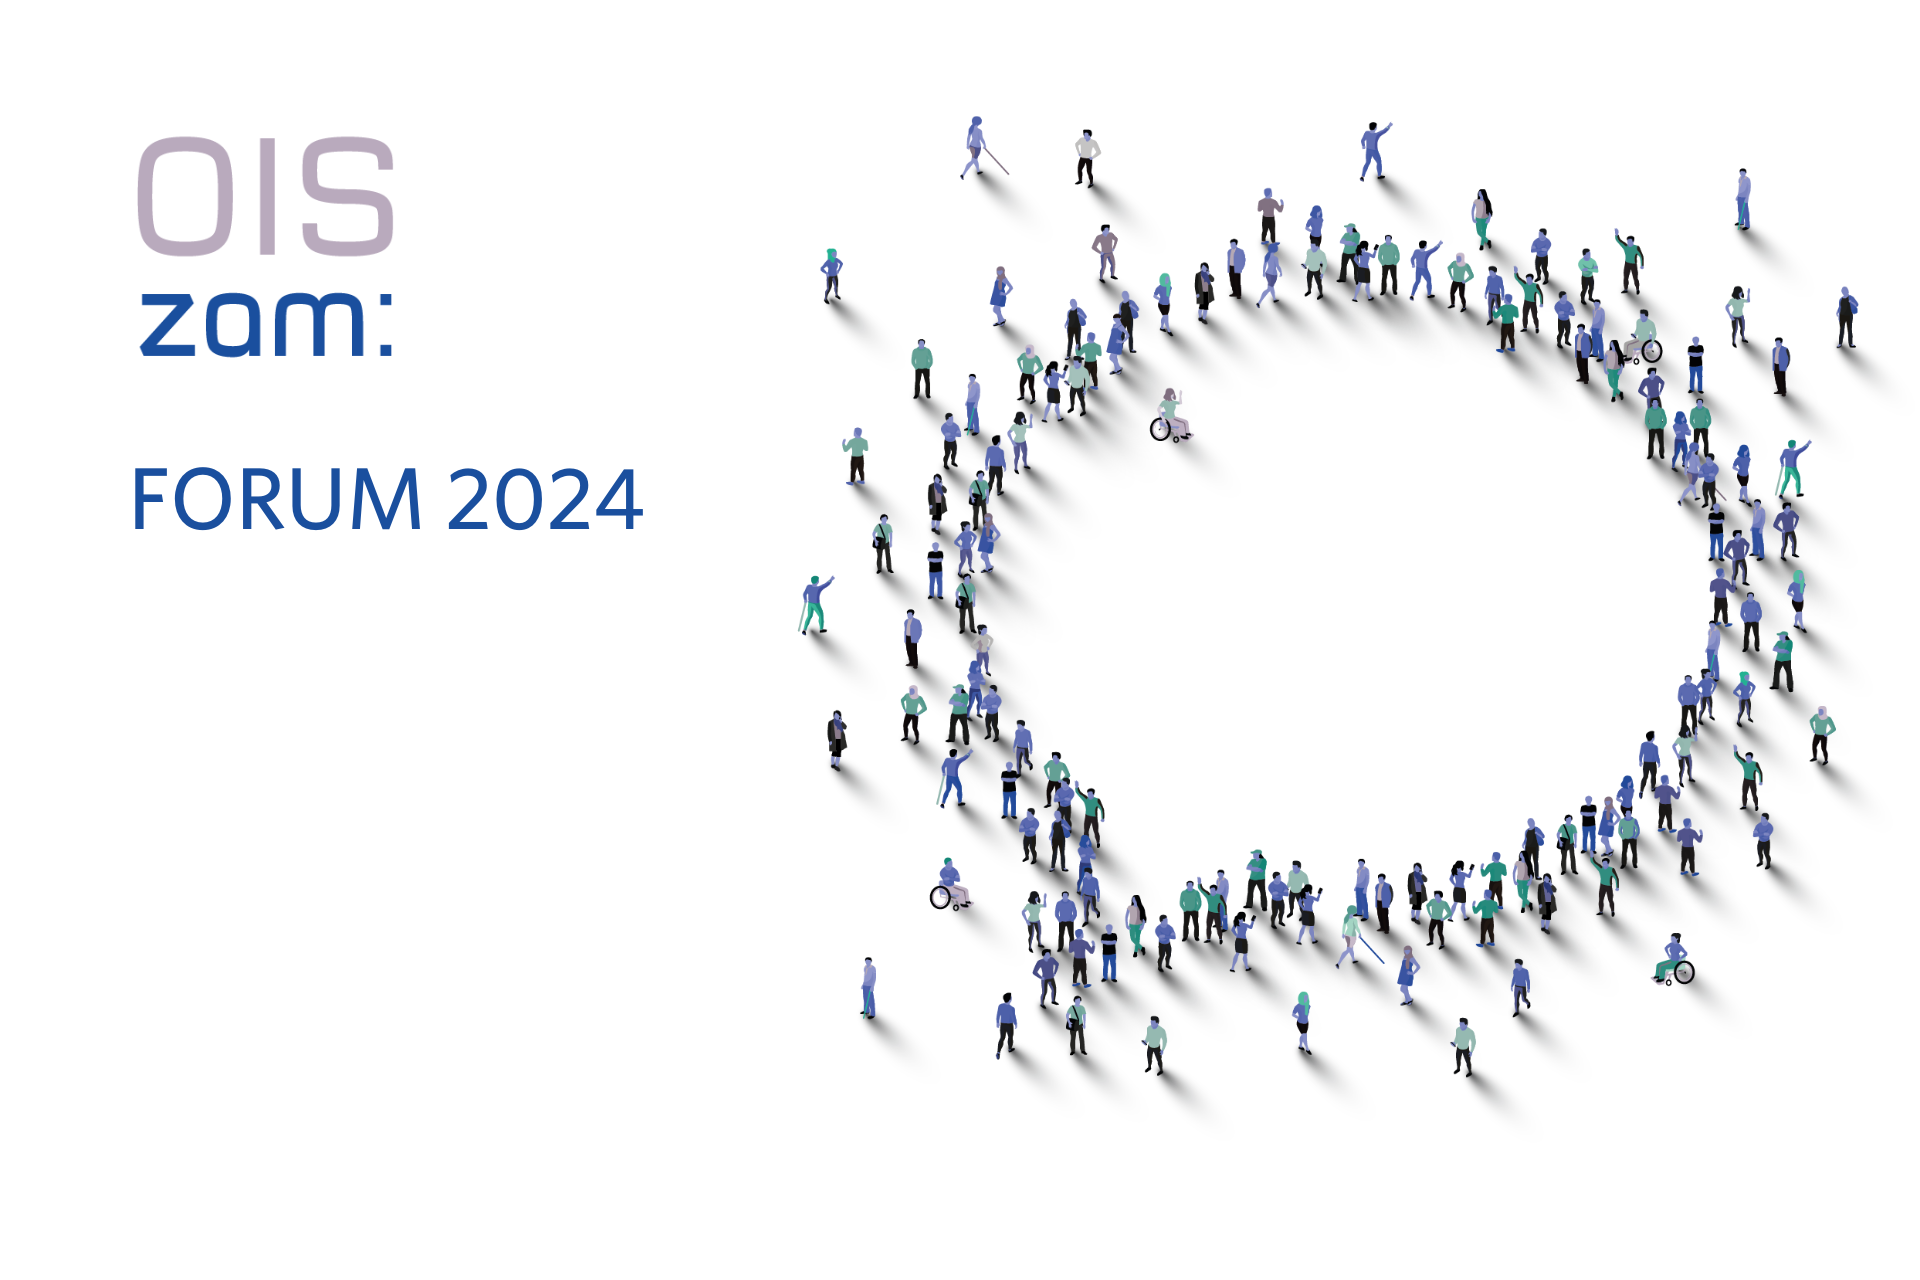 Jetzt Projekte fürs OIS zam: Forum 2024 einreichen!